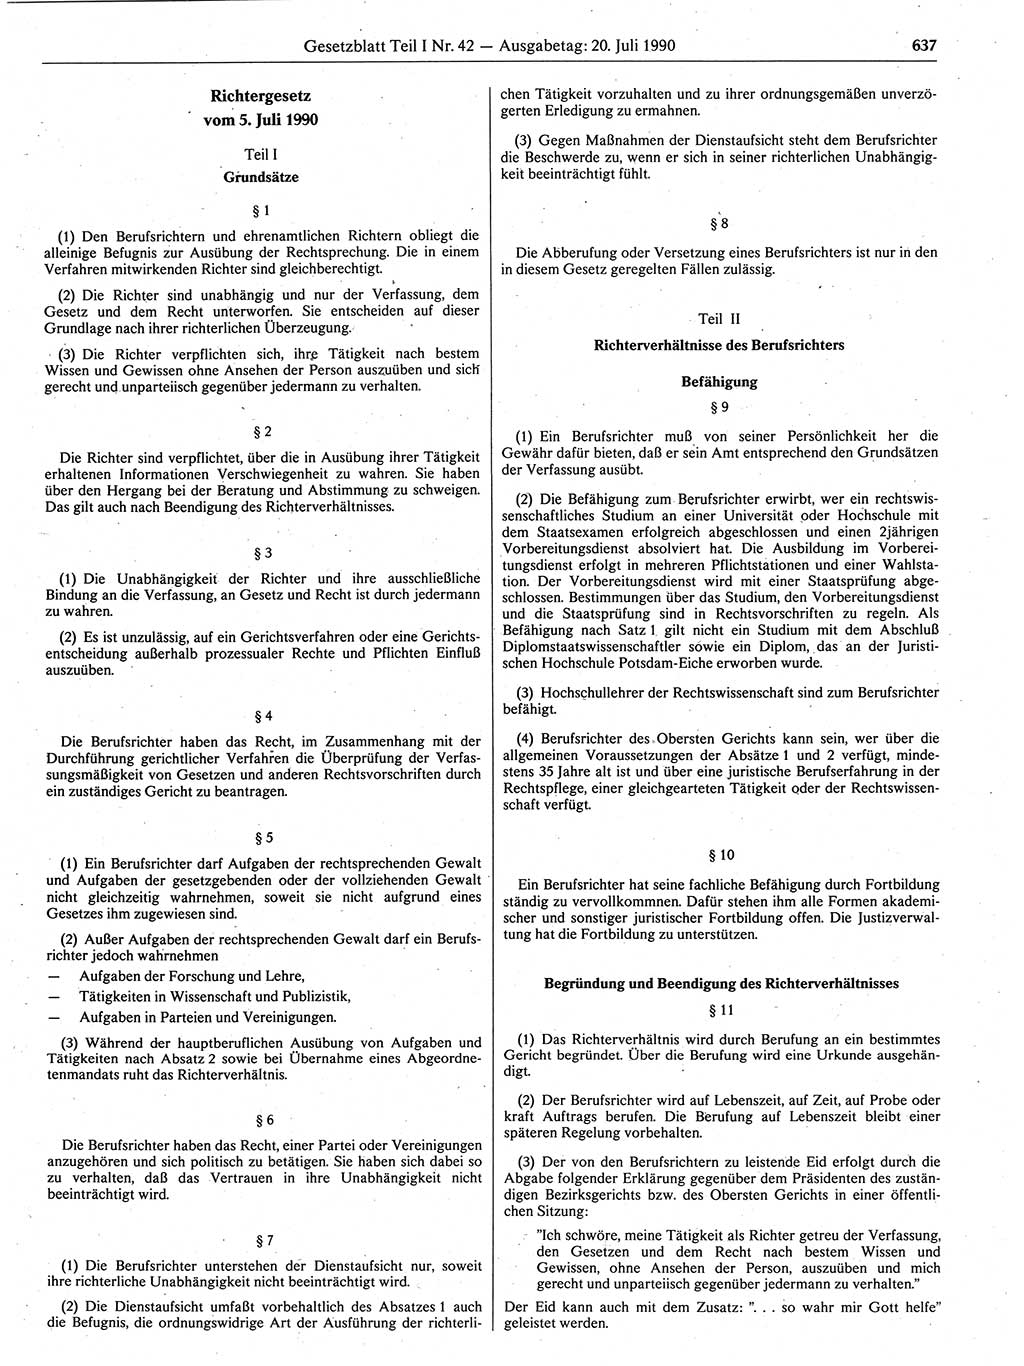 Gesetzblatt (GBl.) der Deutschen Demokratischen Republik (DDR) Teil Ⅰ 1990, Seite 637 (GBl. DDR Ⅰ 1990, S. 637)